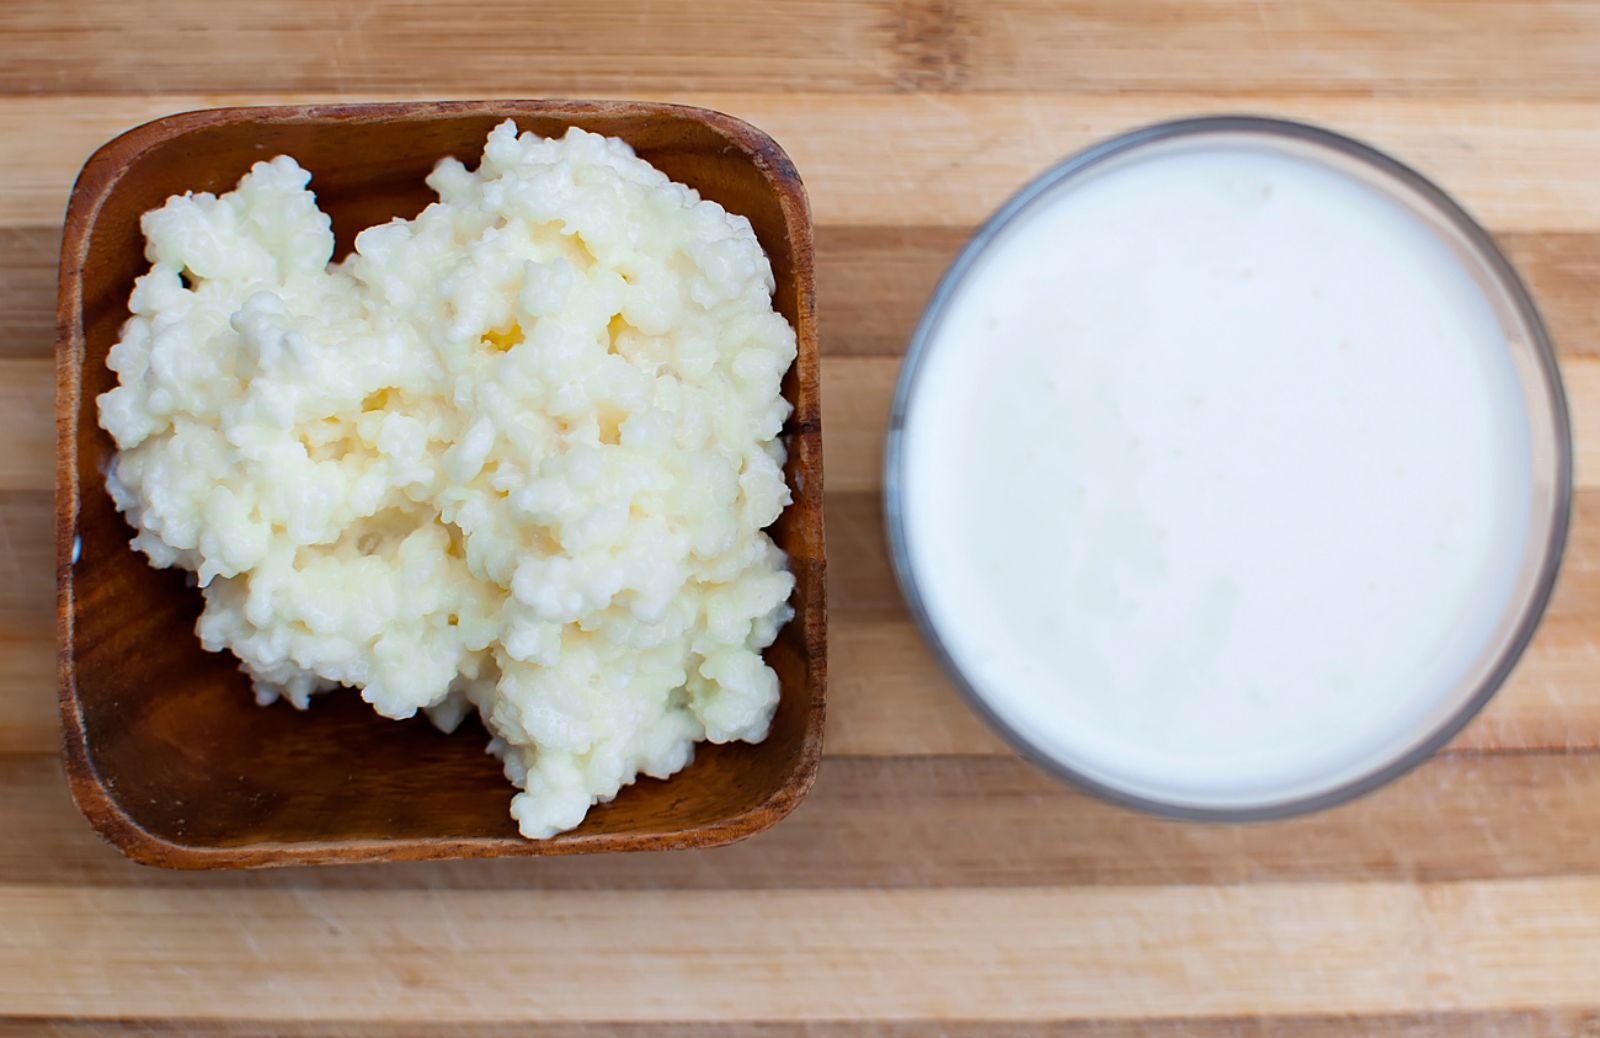 Come autoprodurre in casa il kefir, nuovo yogurt